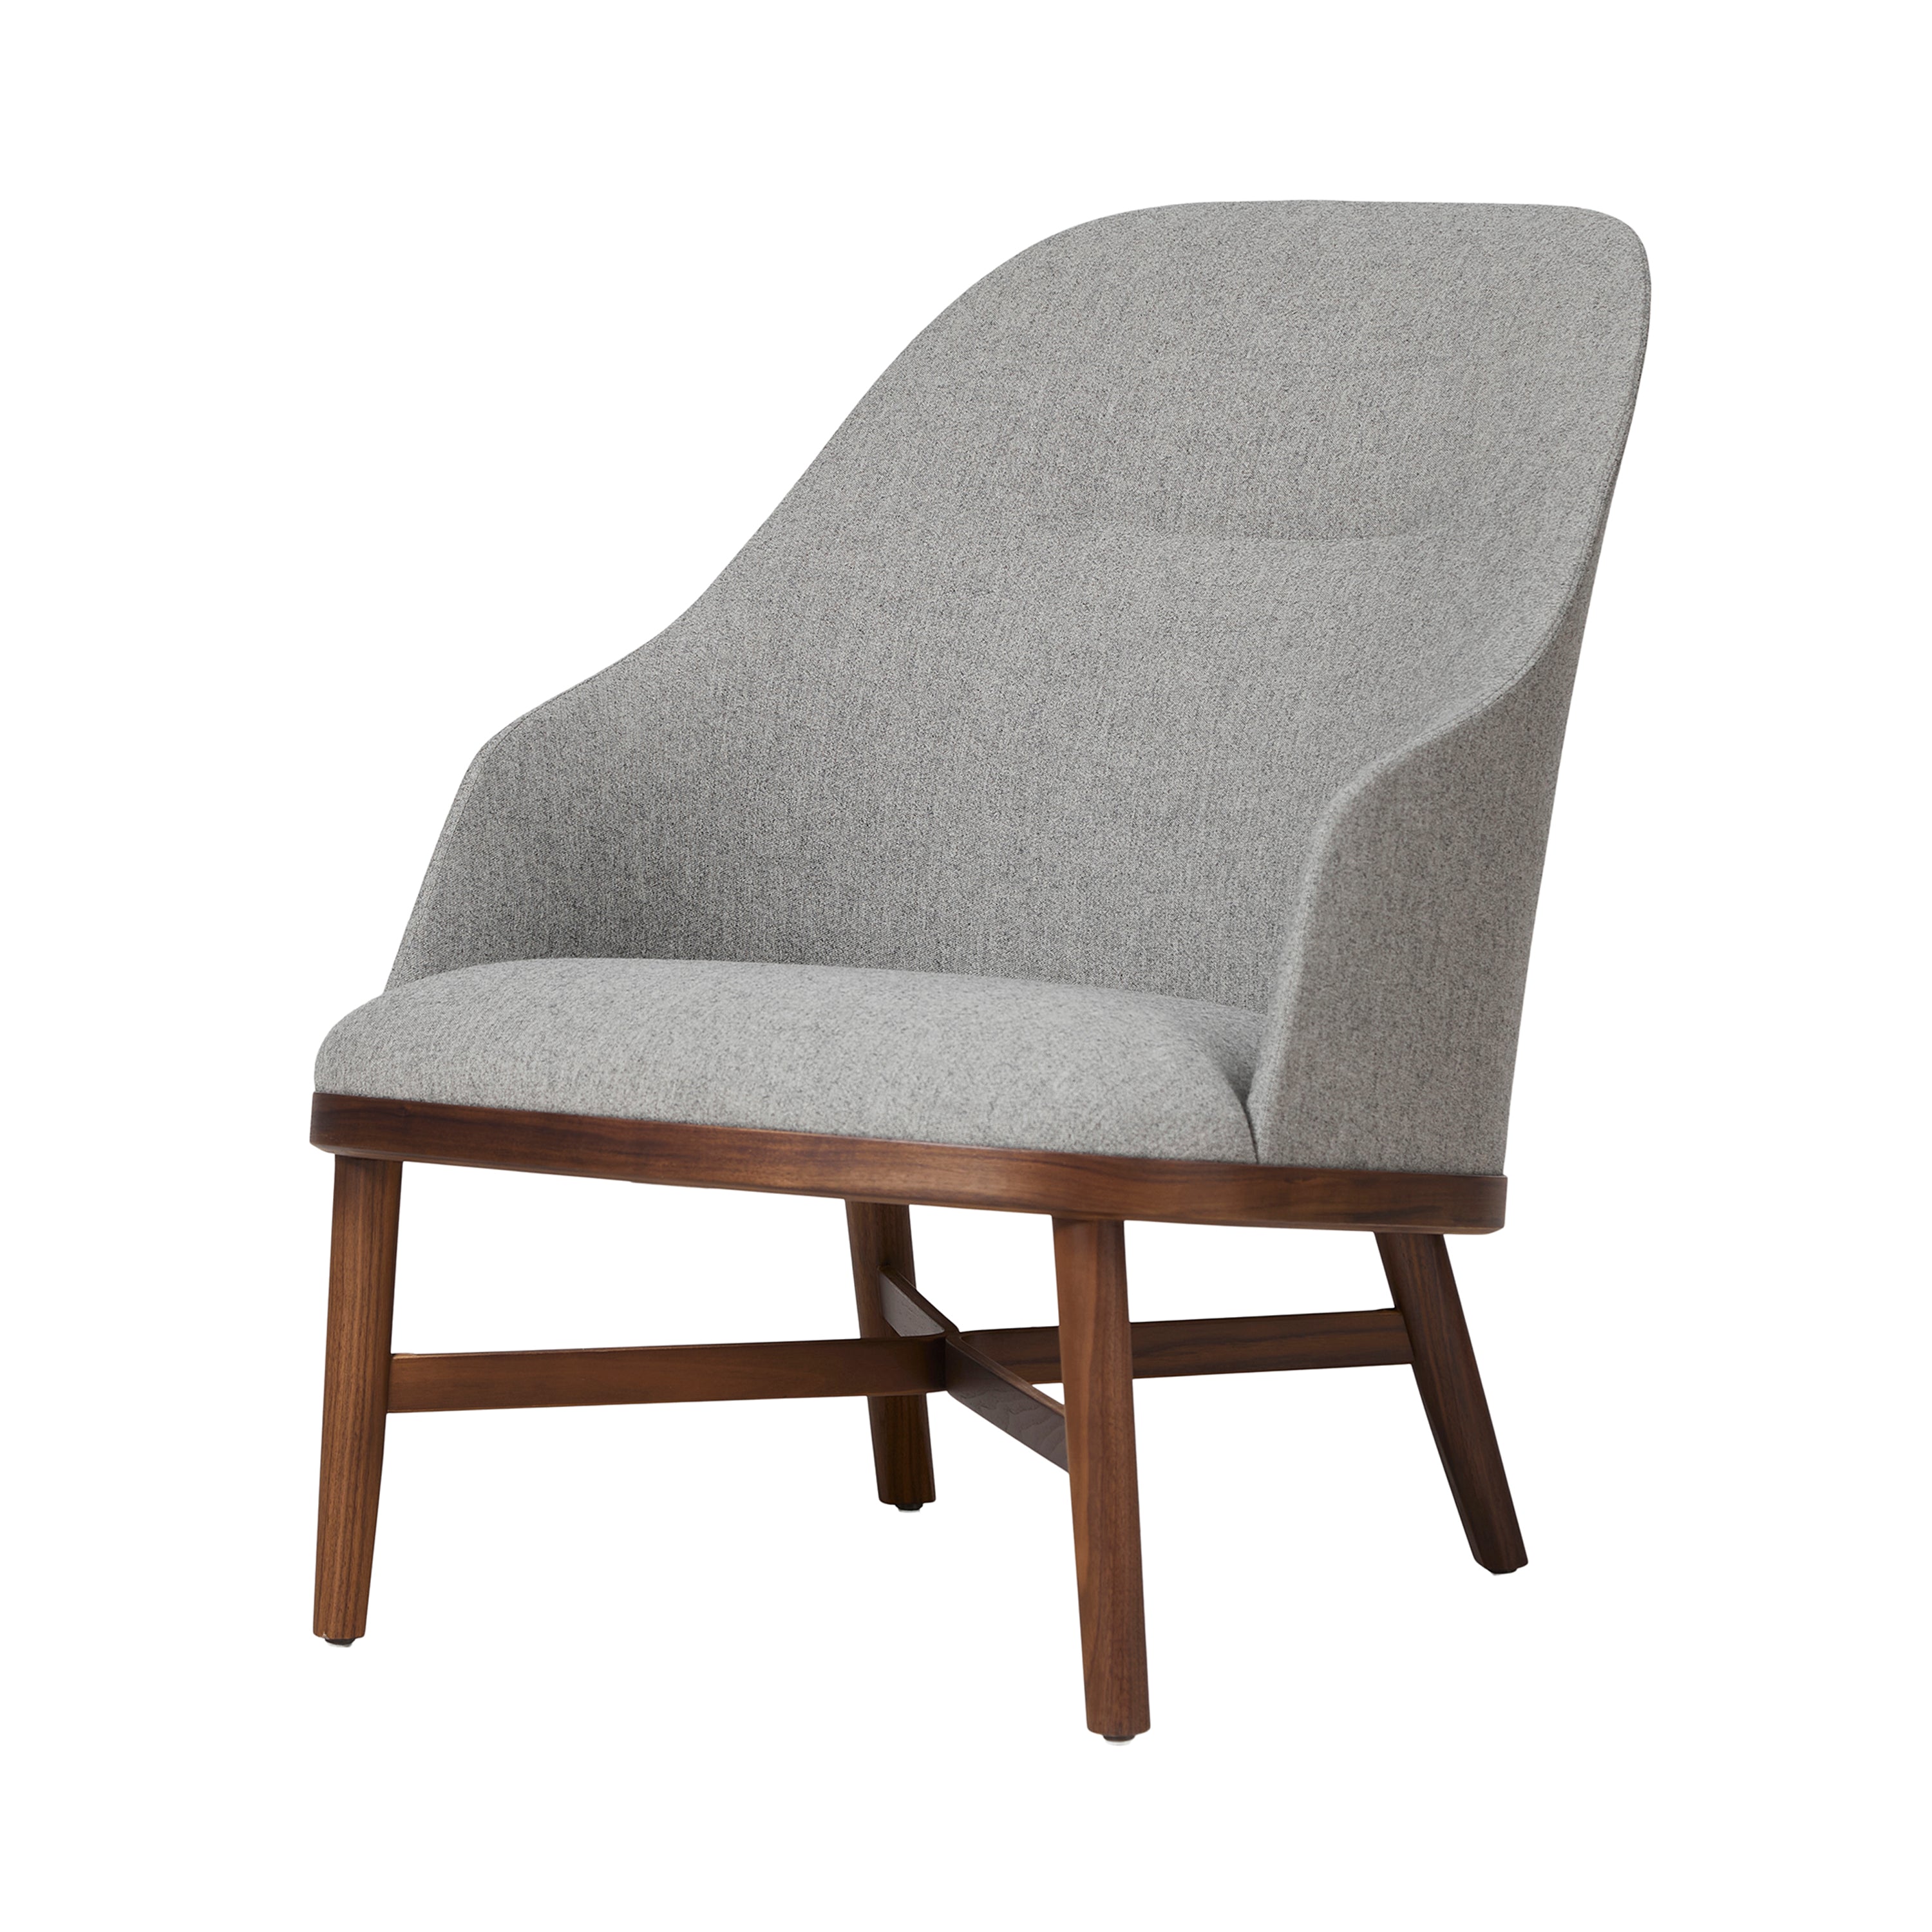 Bund Lounge Chair: Natural Walnut 